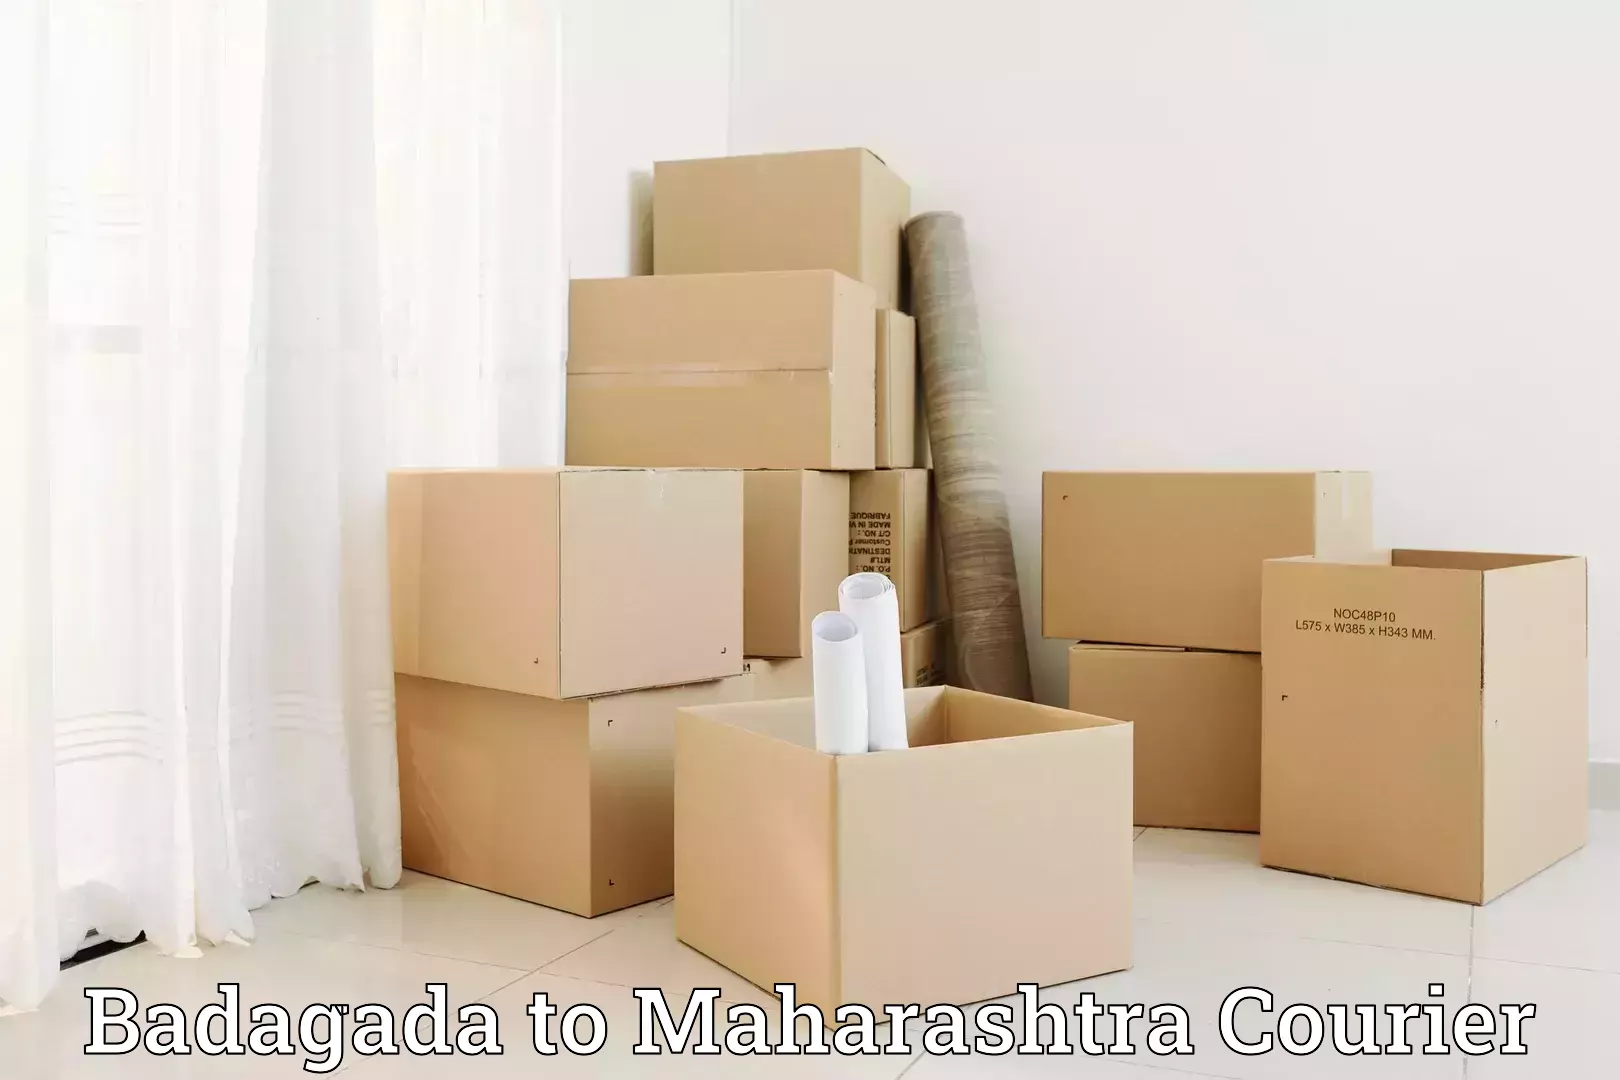 Comprehensive relocation services in Badagada to Mumbai